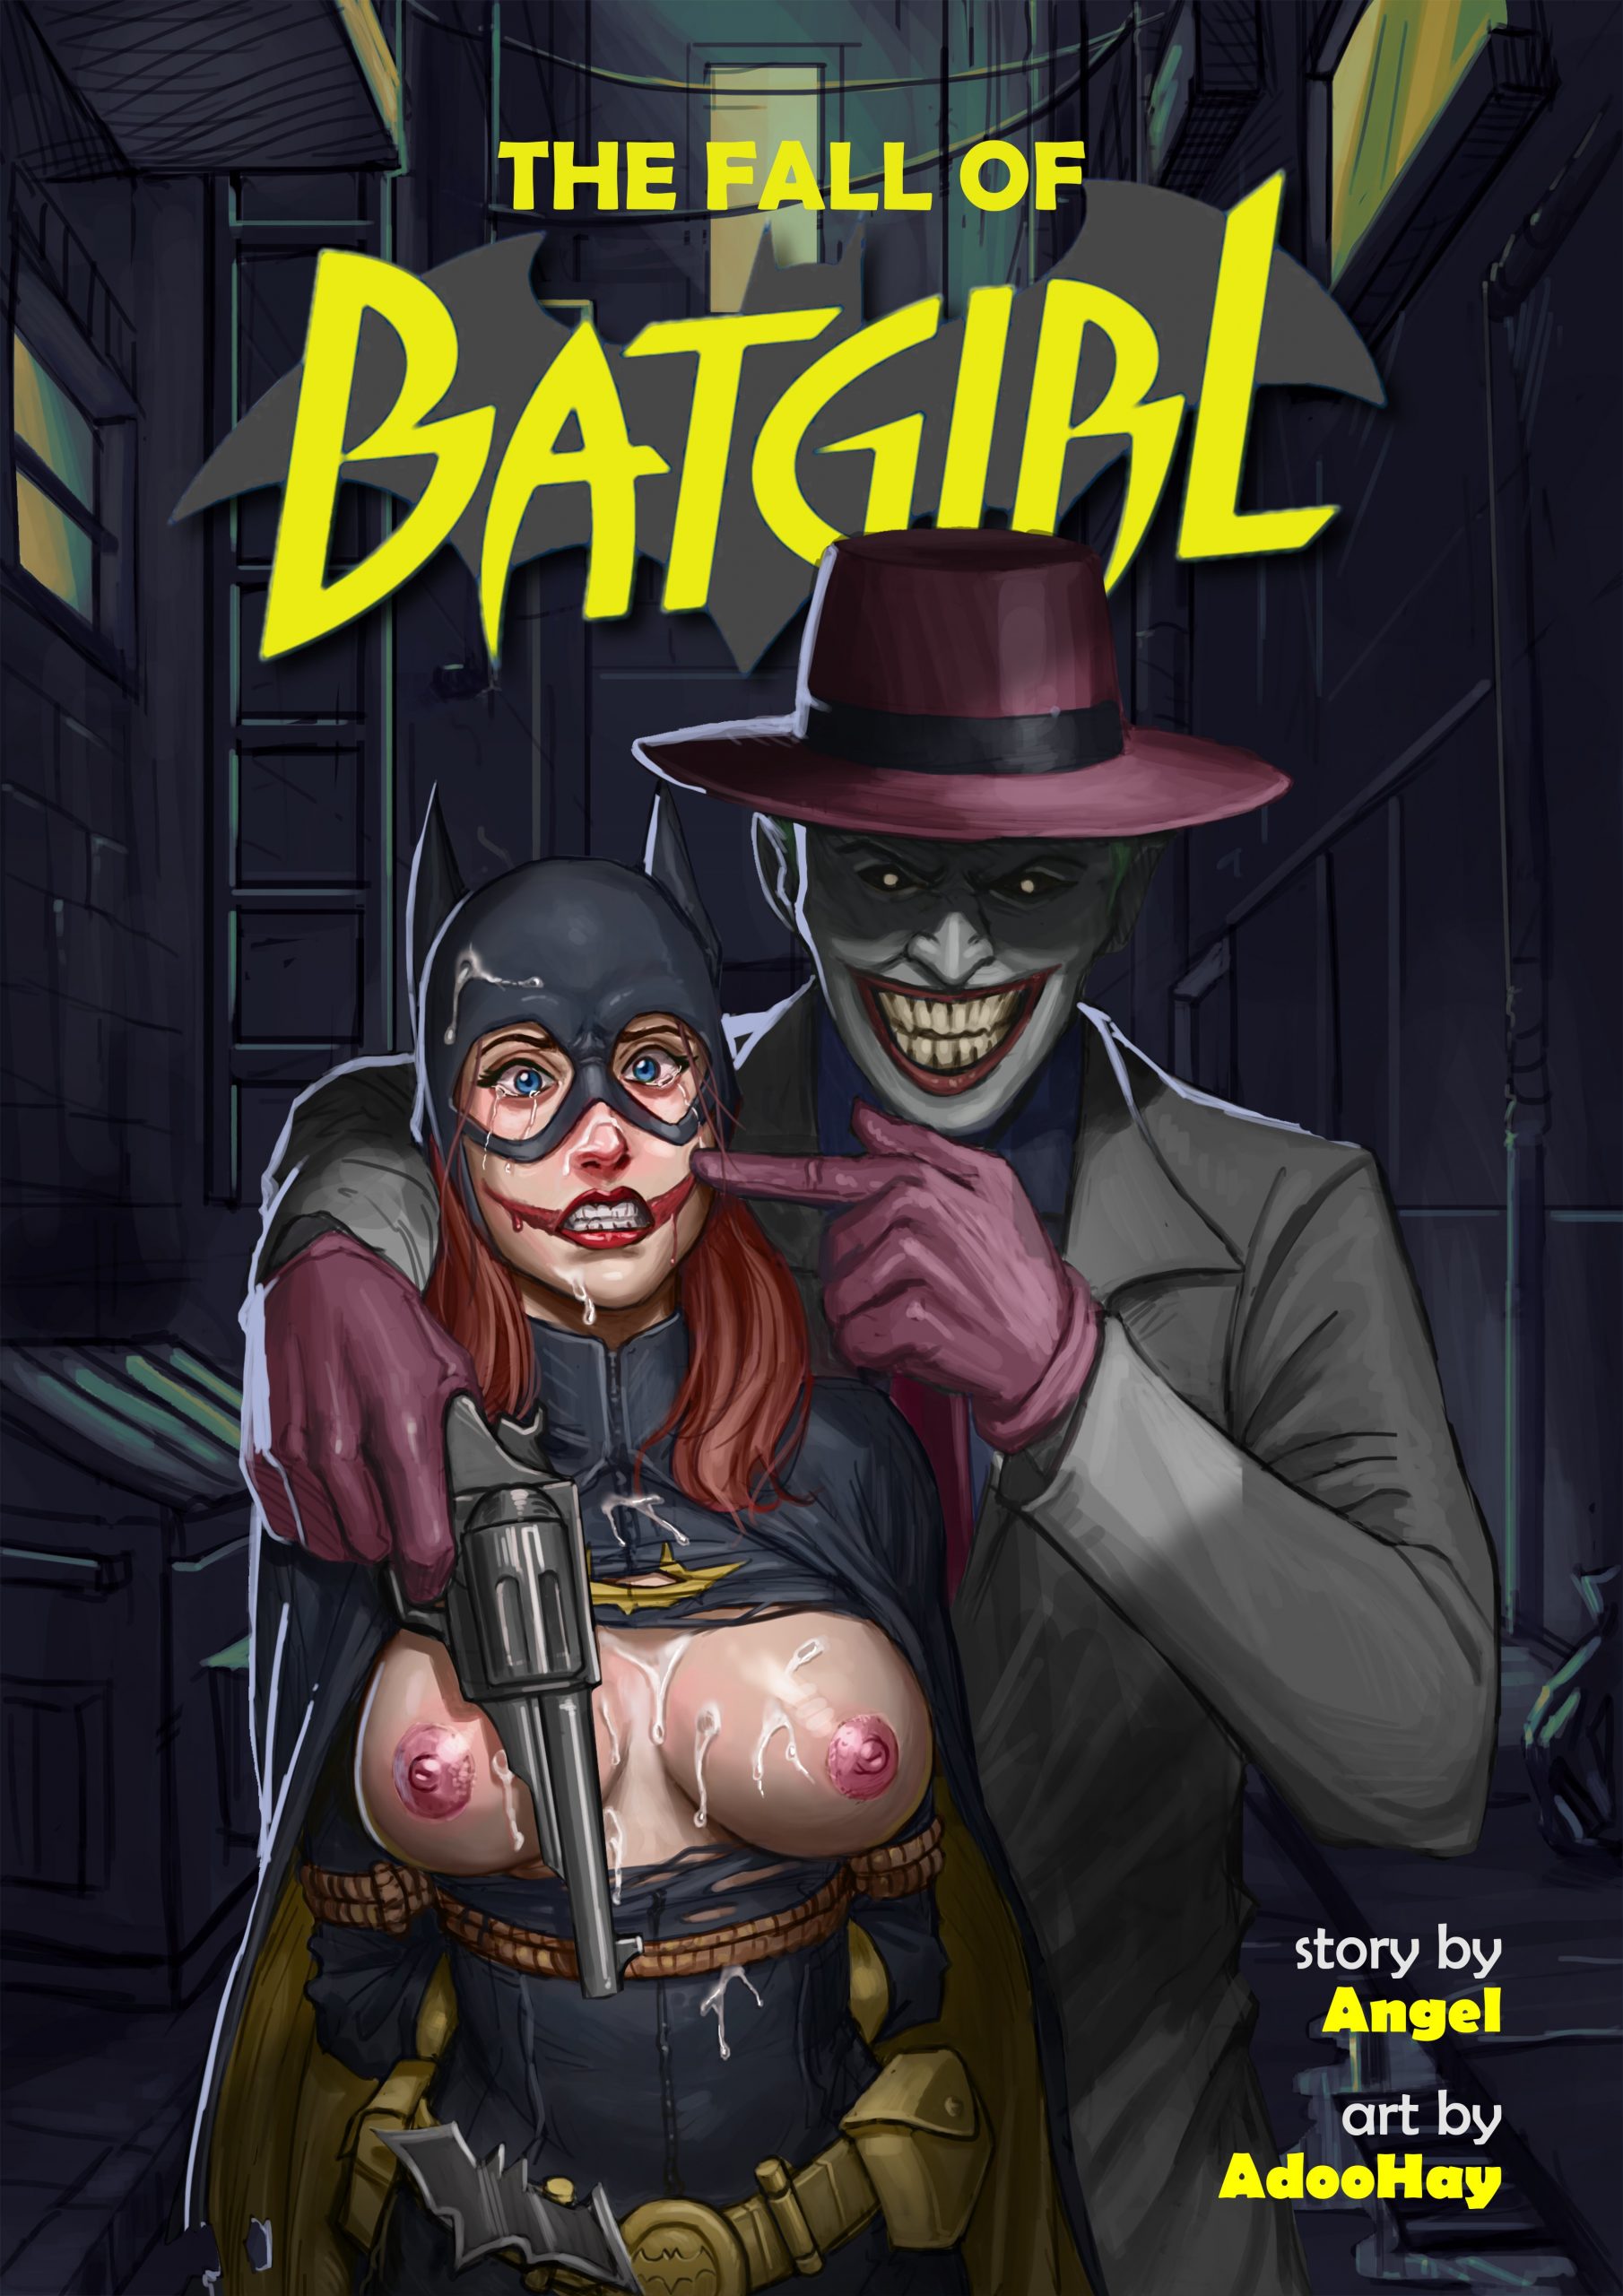 Sexy batman and batgirl comic porno